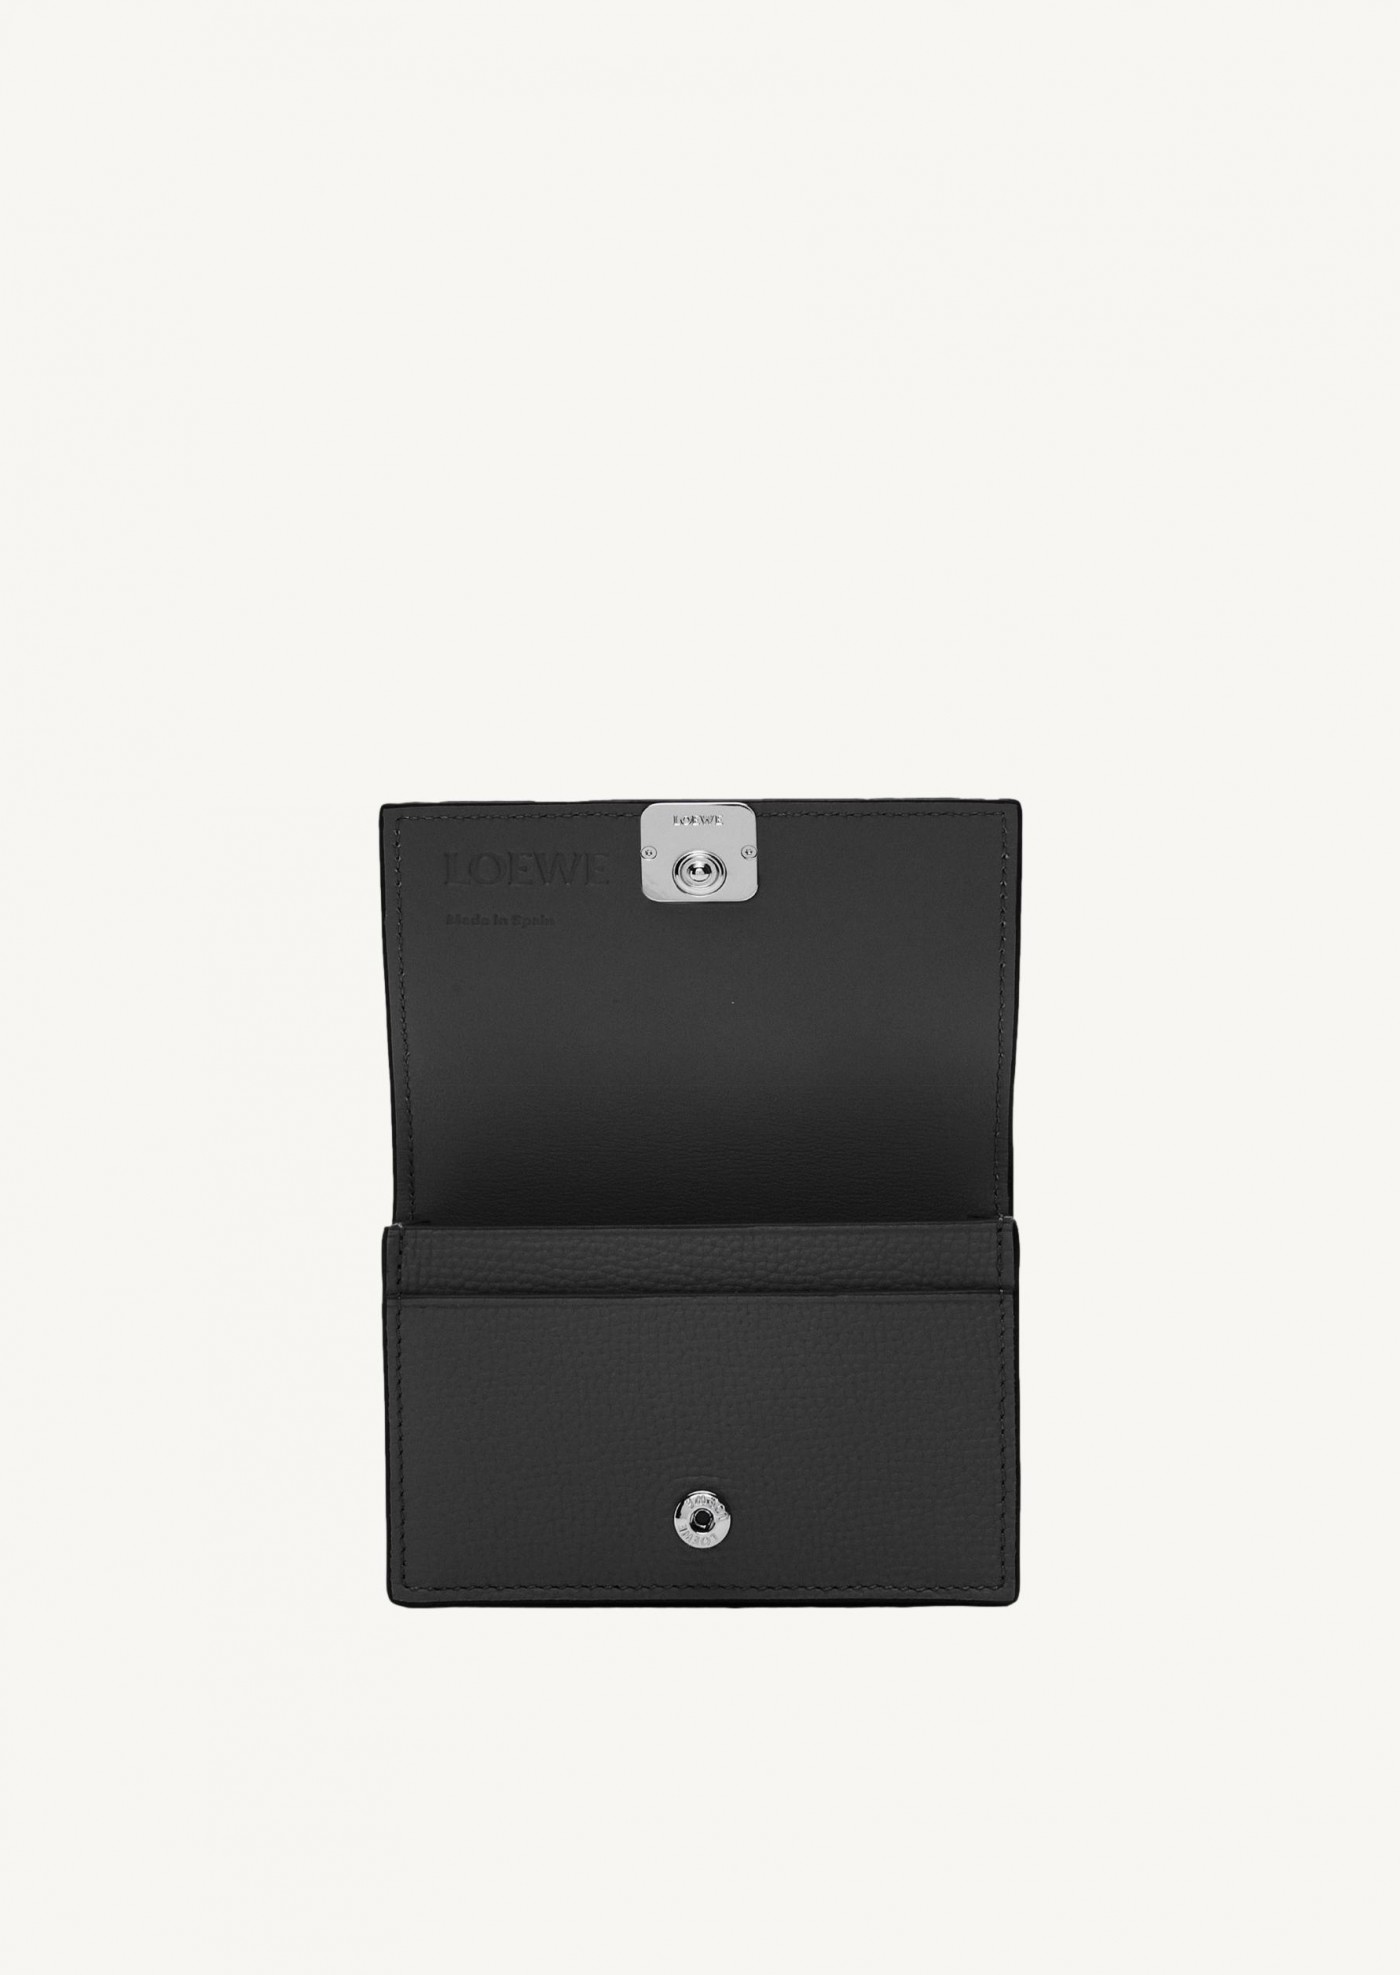 Anagram business cardholder in pebble grain calfskin black